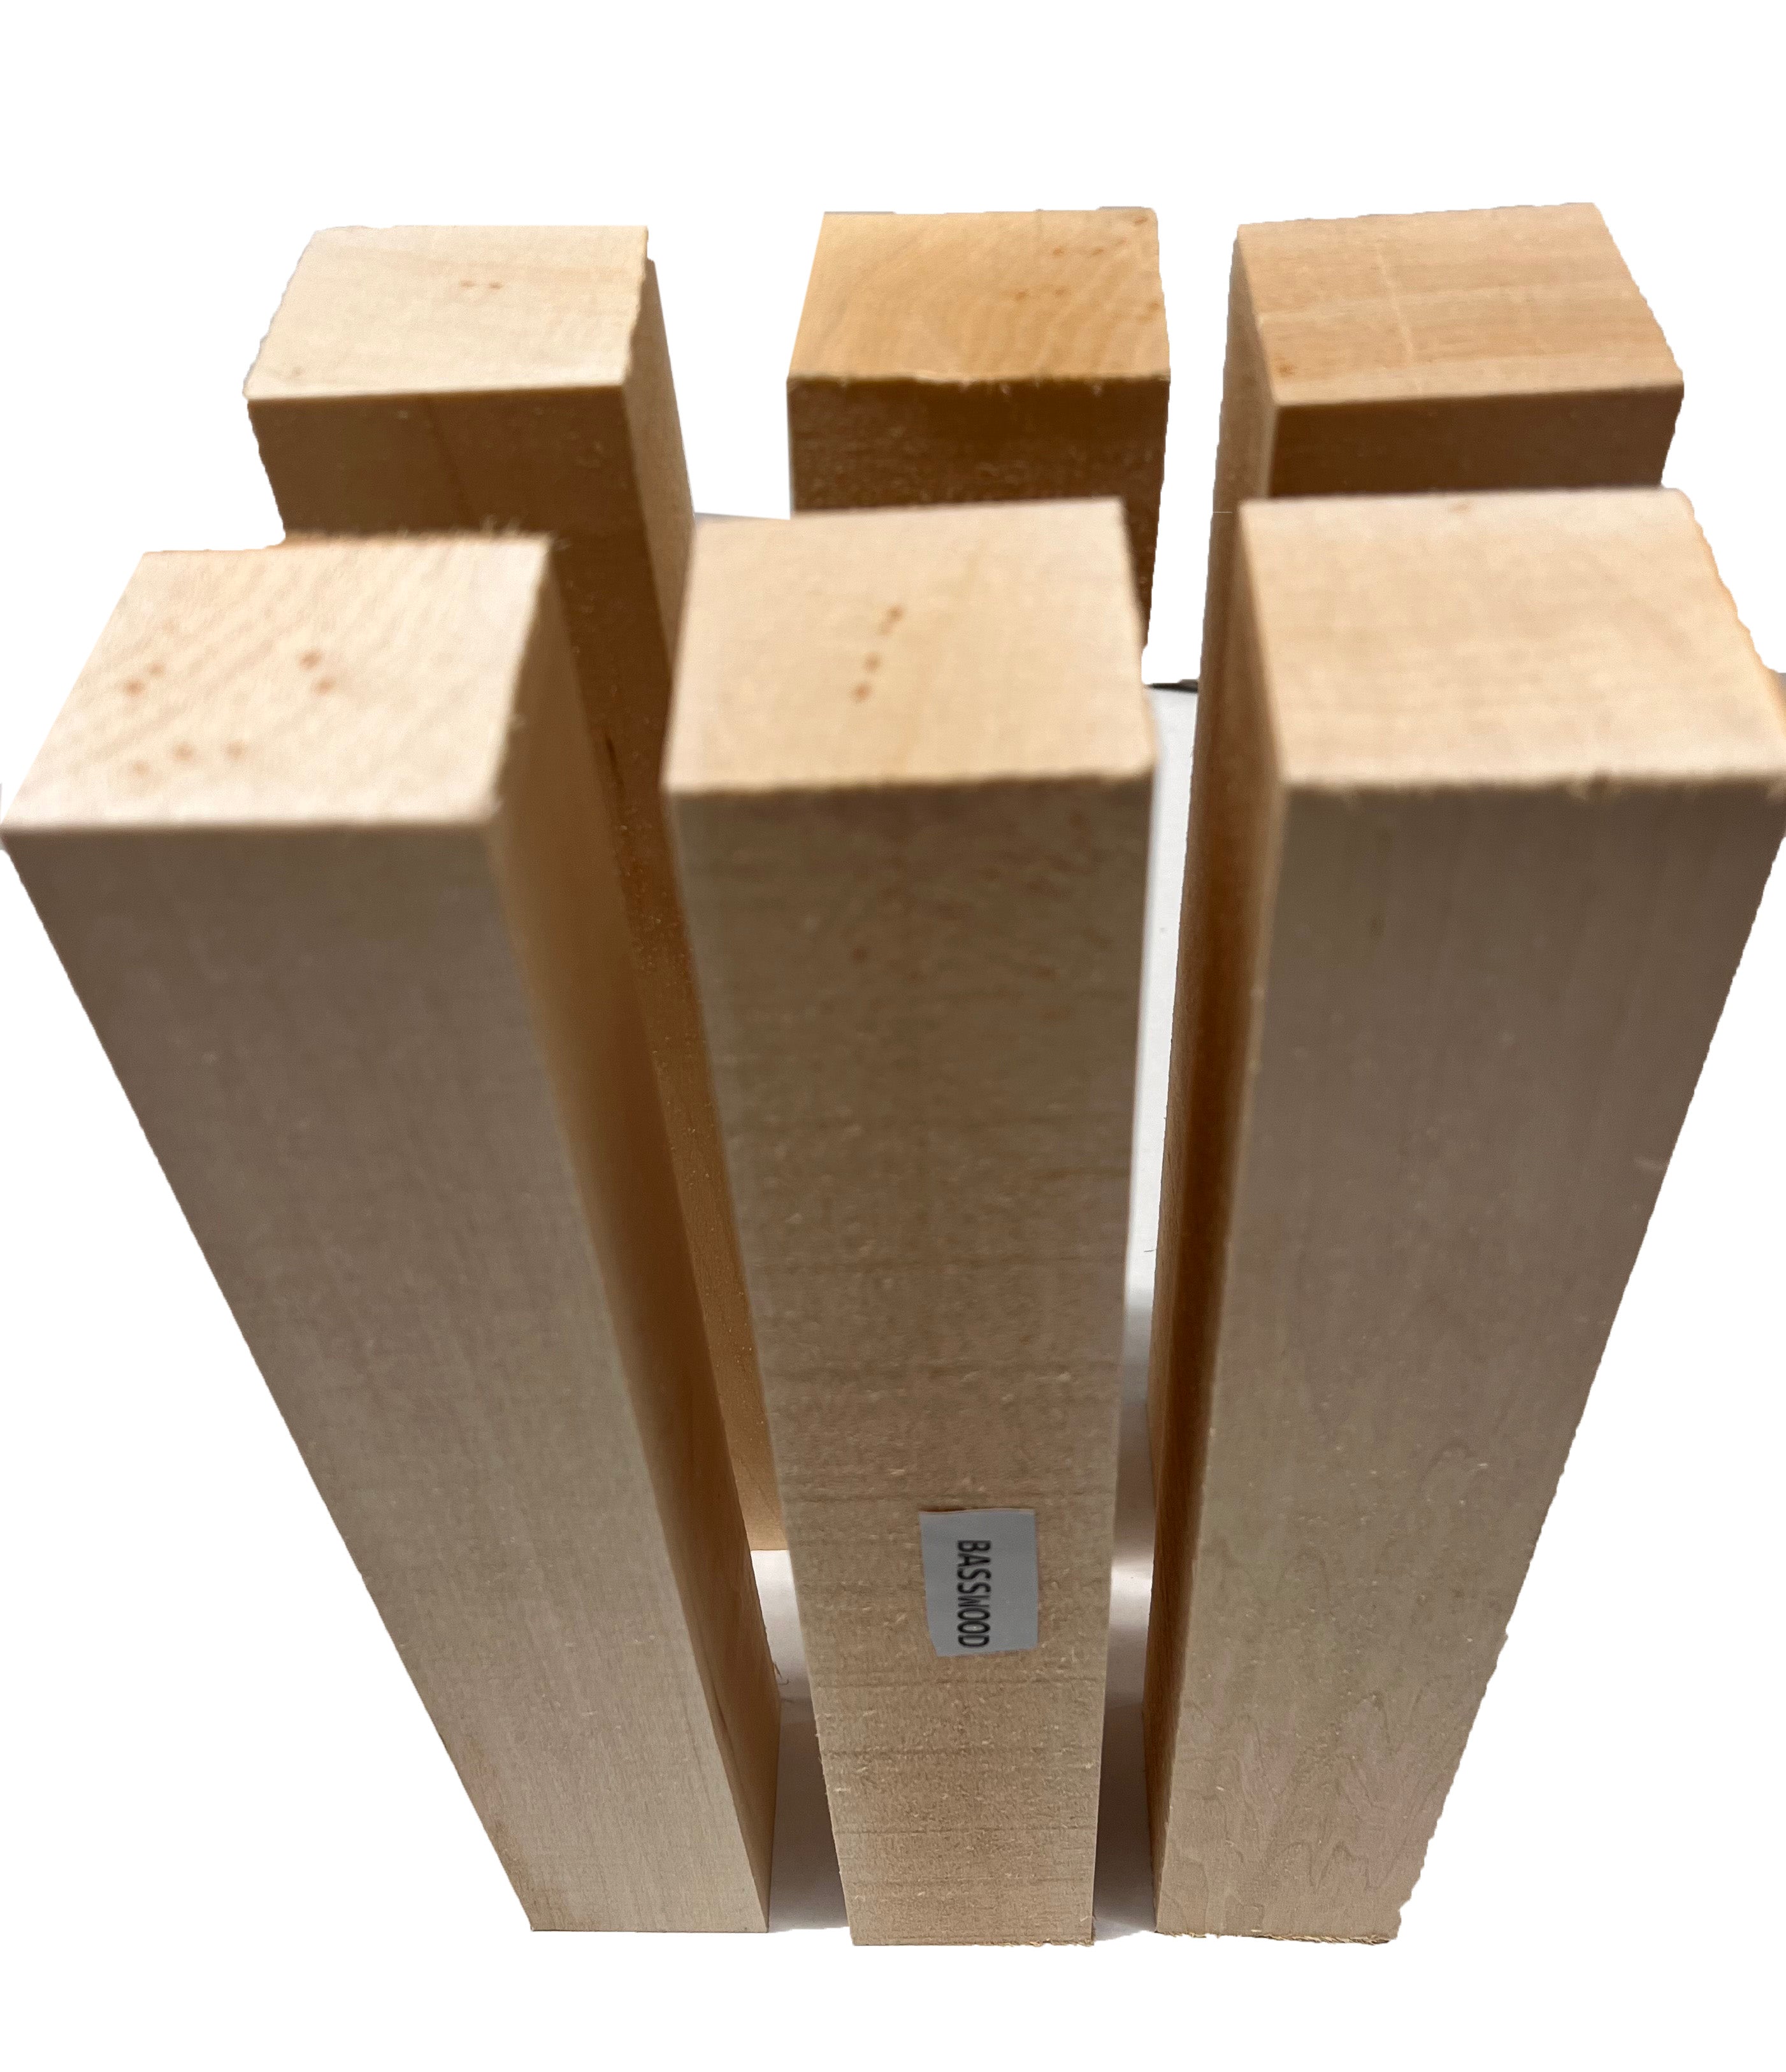 Varilla de madera Tilo 10 x 1000 mm. Paquete de 3 unidades. Marca  Constructo. Ref: 480175. 